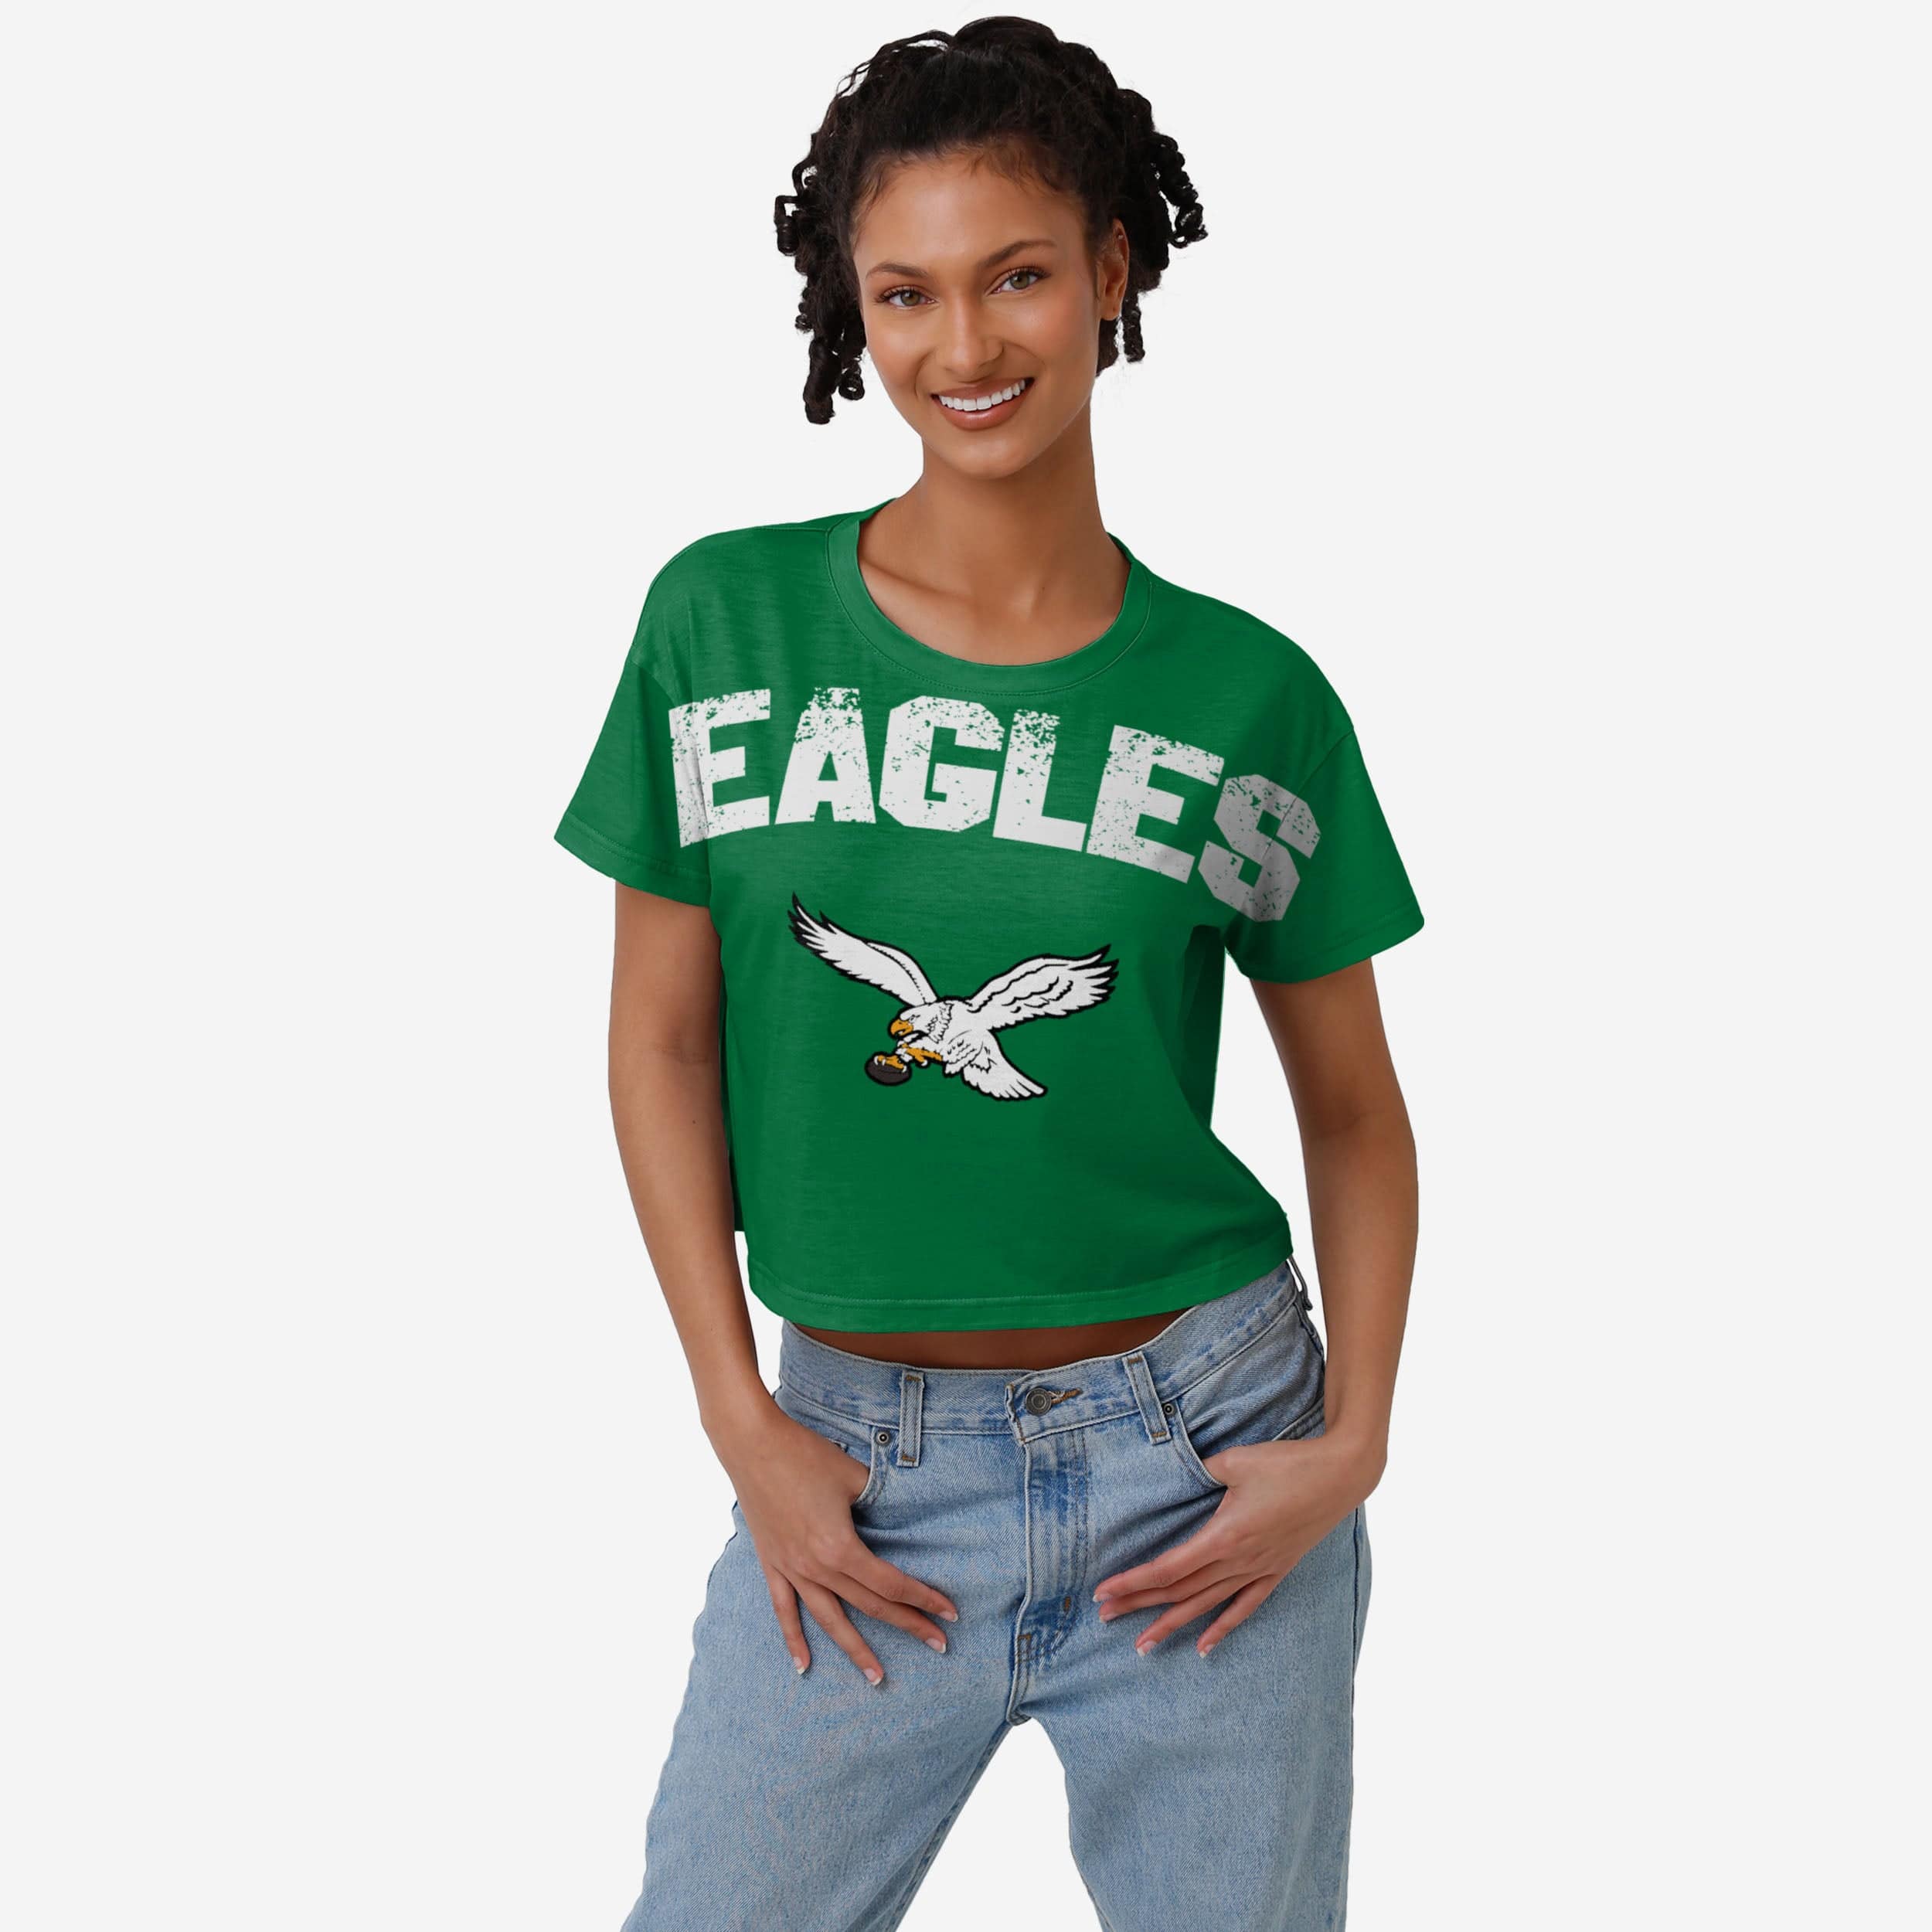 New Era Women's Philadelphia Eagles Kelly Green Sporty Long Sleeve Crop Top